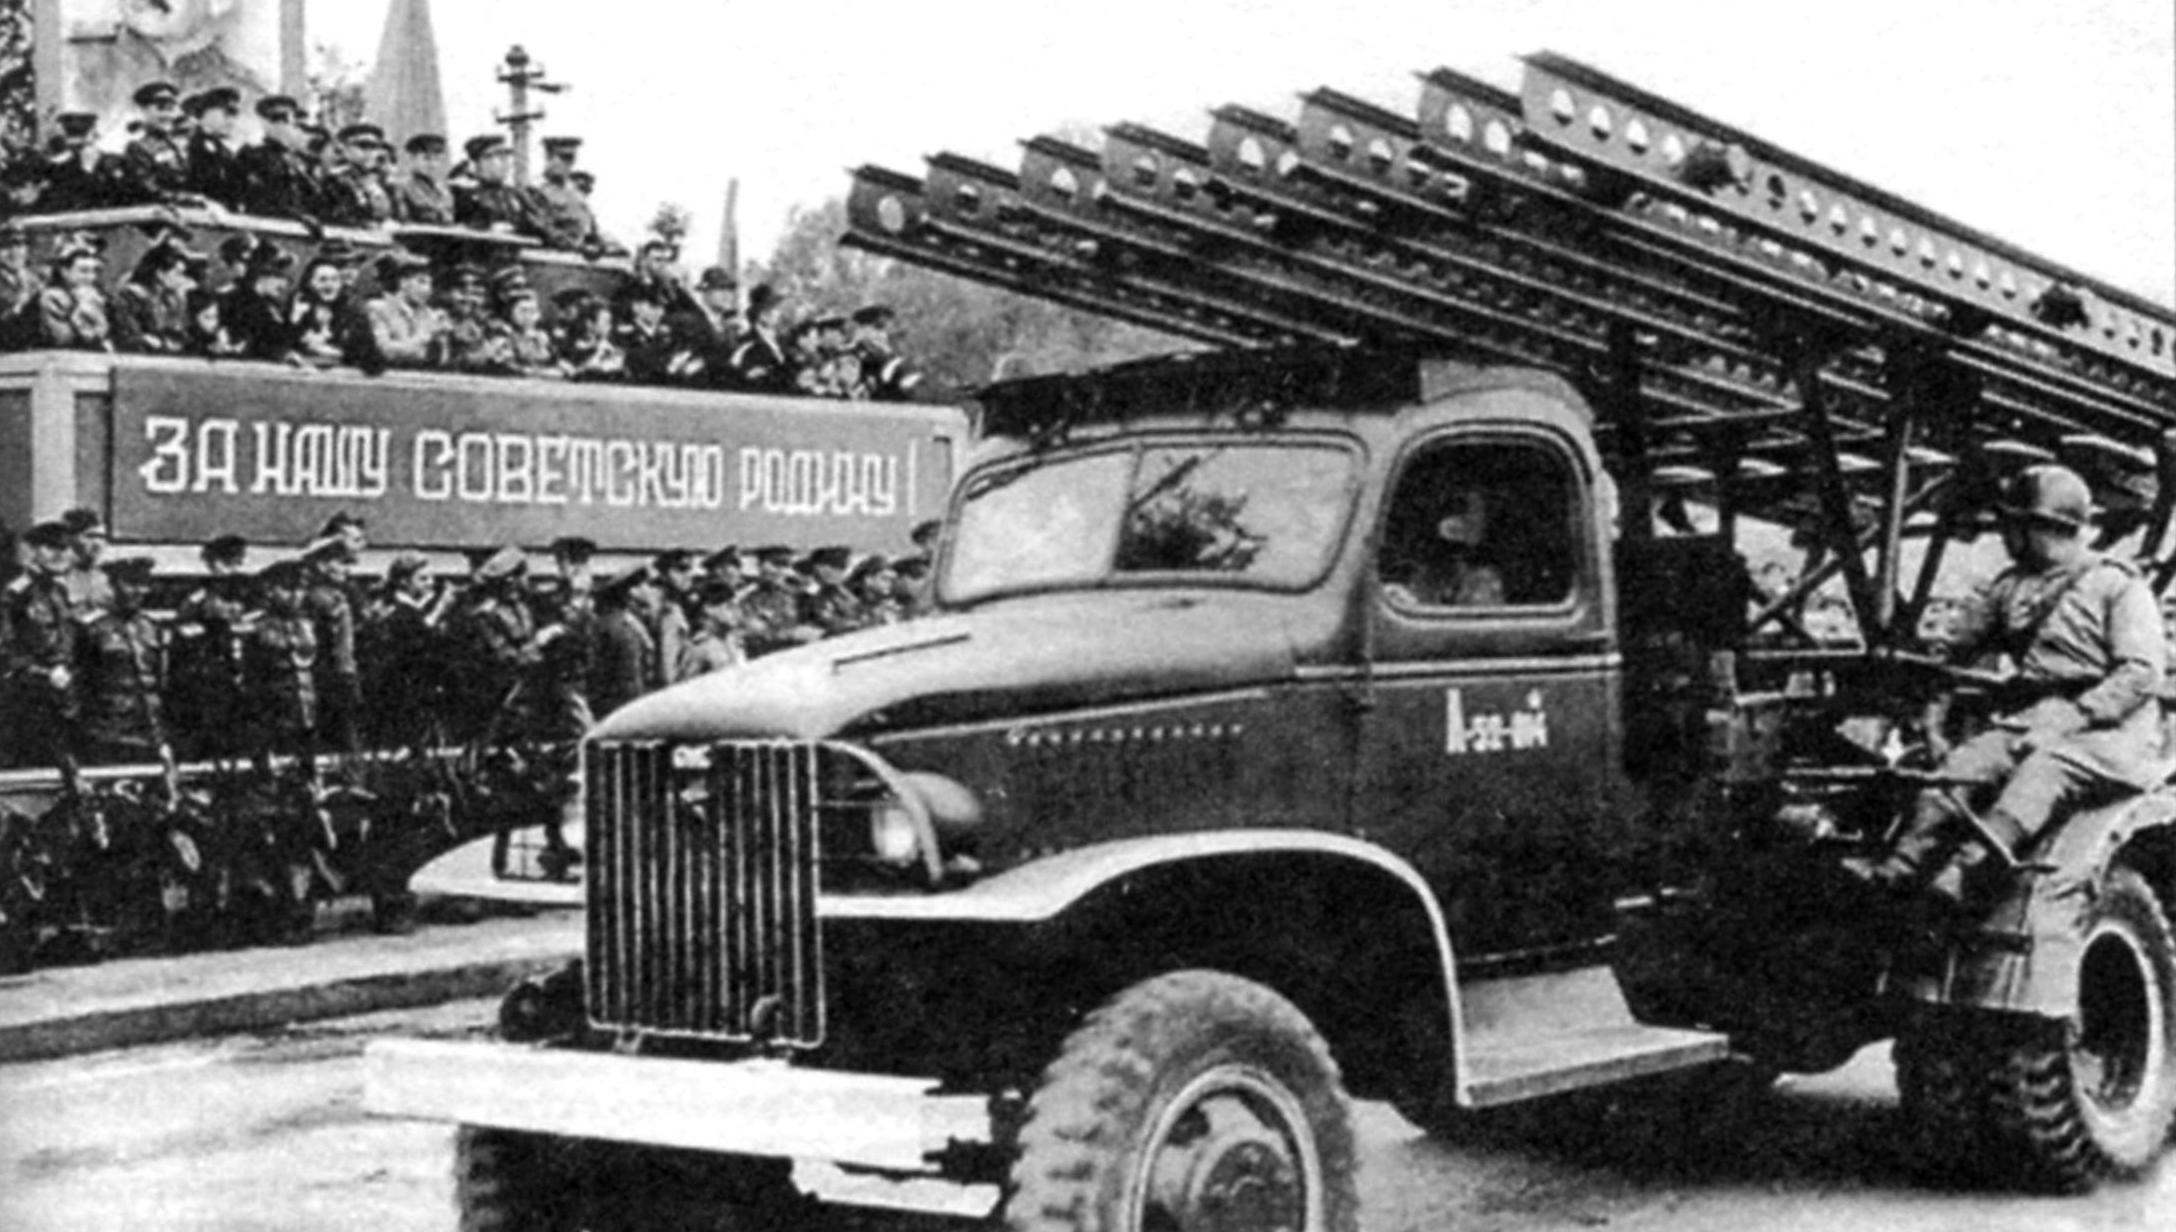 Установка БМ-13 на шасси американского грузового военного автомобиля GМС ССКW-353 (2x4) на одном из парадов в Германии. 1945 г.